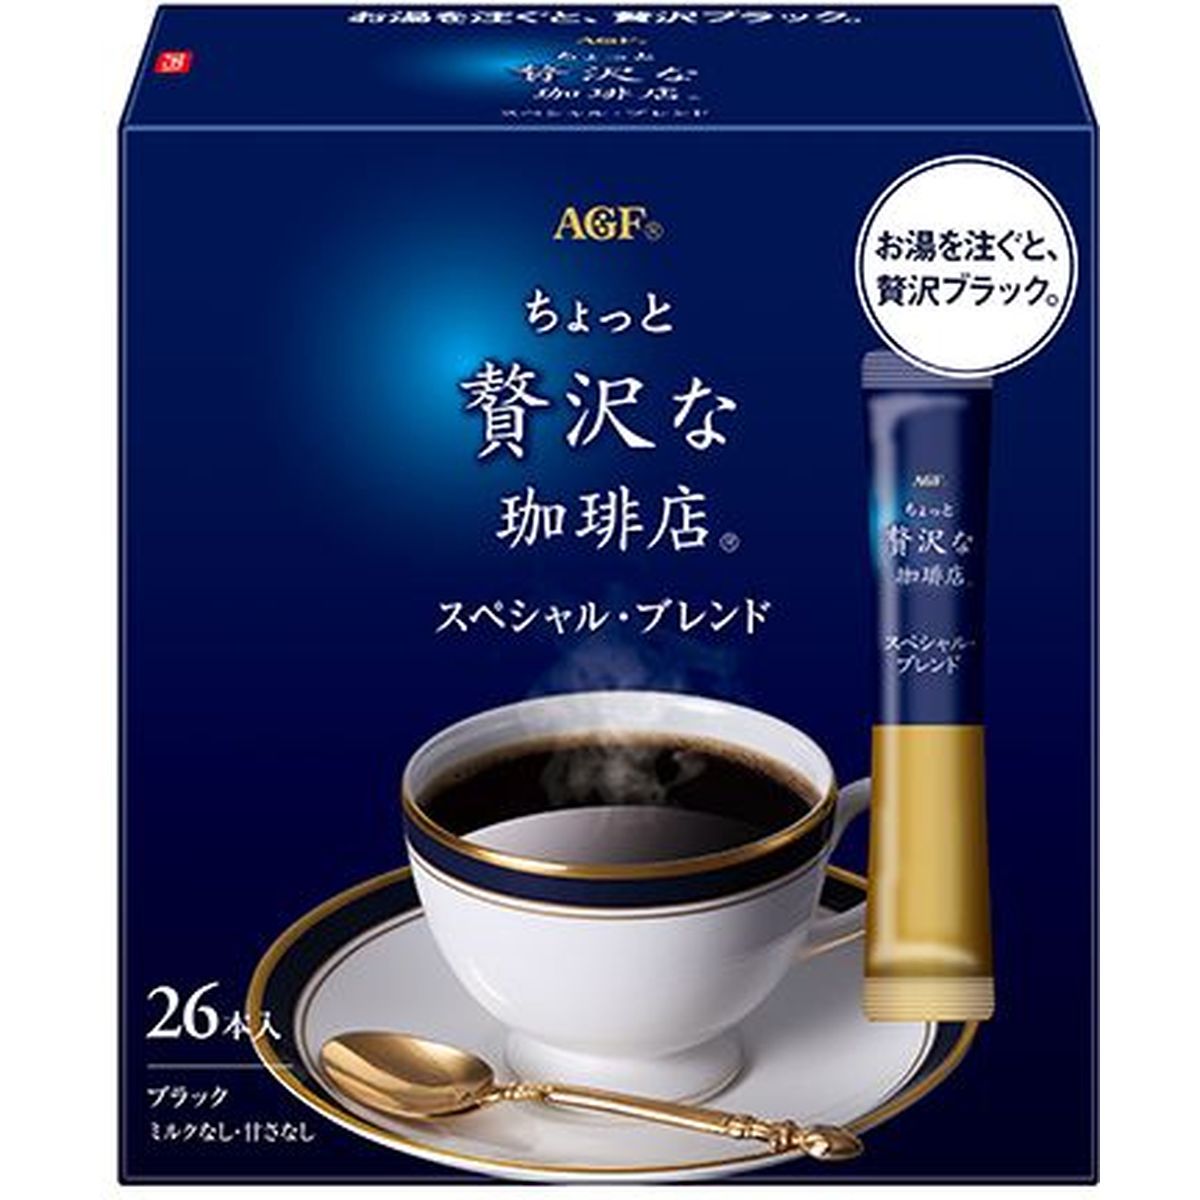 ひかりＴＶショッピング 【3個入リ】AGF チョット贅沢ナ珈琲店 パーソナルインスタントコーヒー 26本